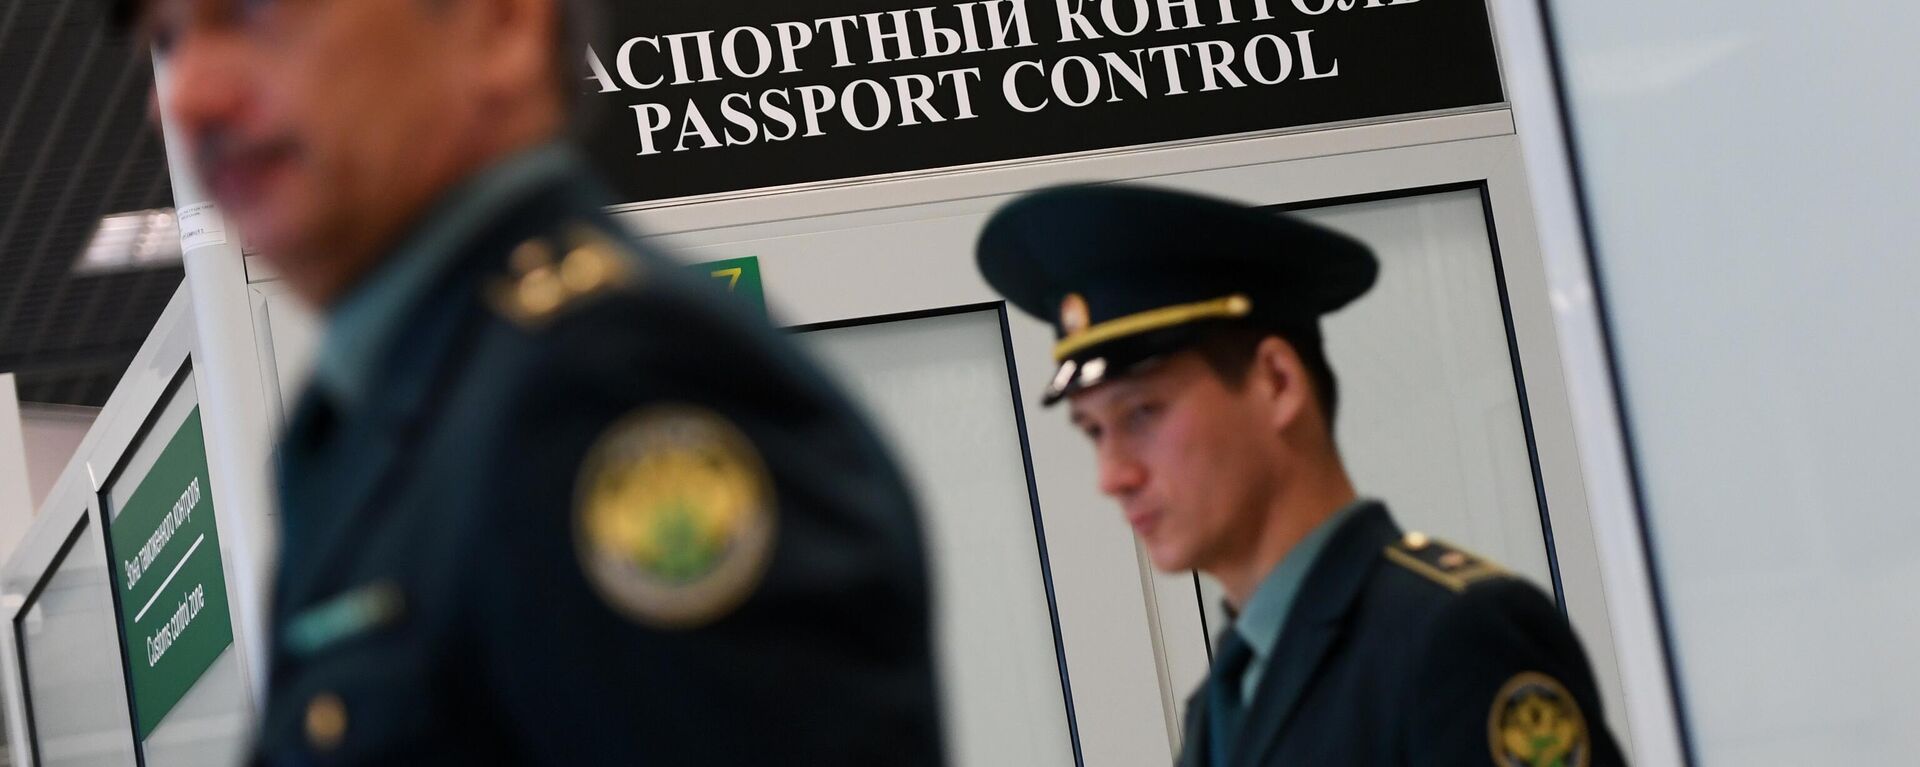 Зона паспортного контроля  - Sputnik Узбекистан, 1920, 07.09.2021